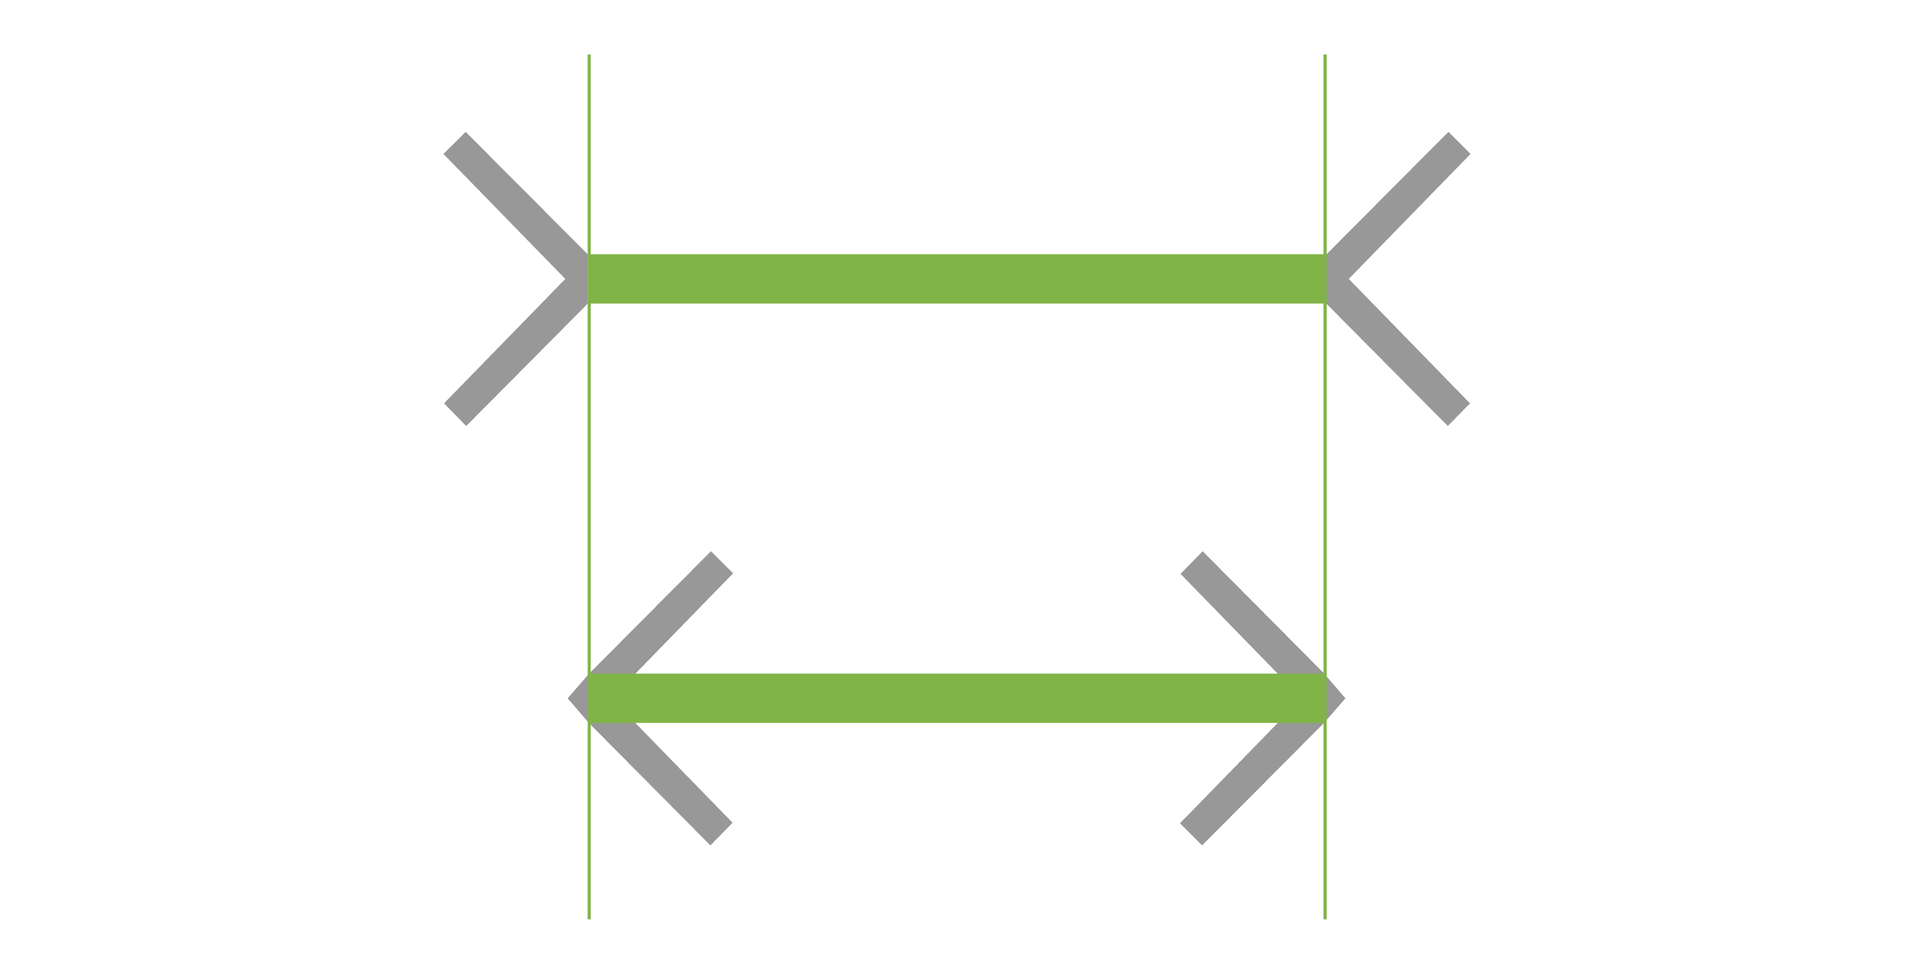 Ilustracja przedstawia dwie równoległe do siebie strzałki. Górna ma wklęsłe groty skierowane do wewnątrz, dolna na zewnątrz. Groty zaznaczono kolorem szarym, kreski pomiędzy nimi kolorem zielonym. Na końcach kresek poprowadzono linie pionowe, co udowadnia identyczną długość kresek. 